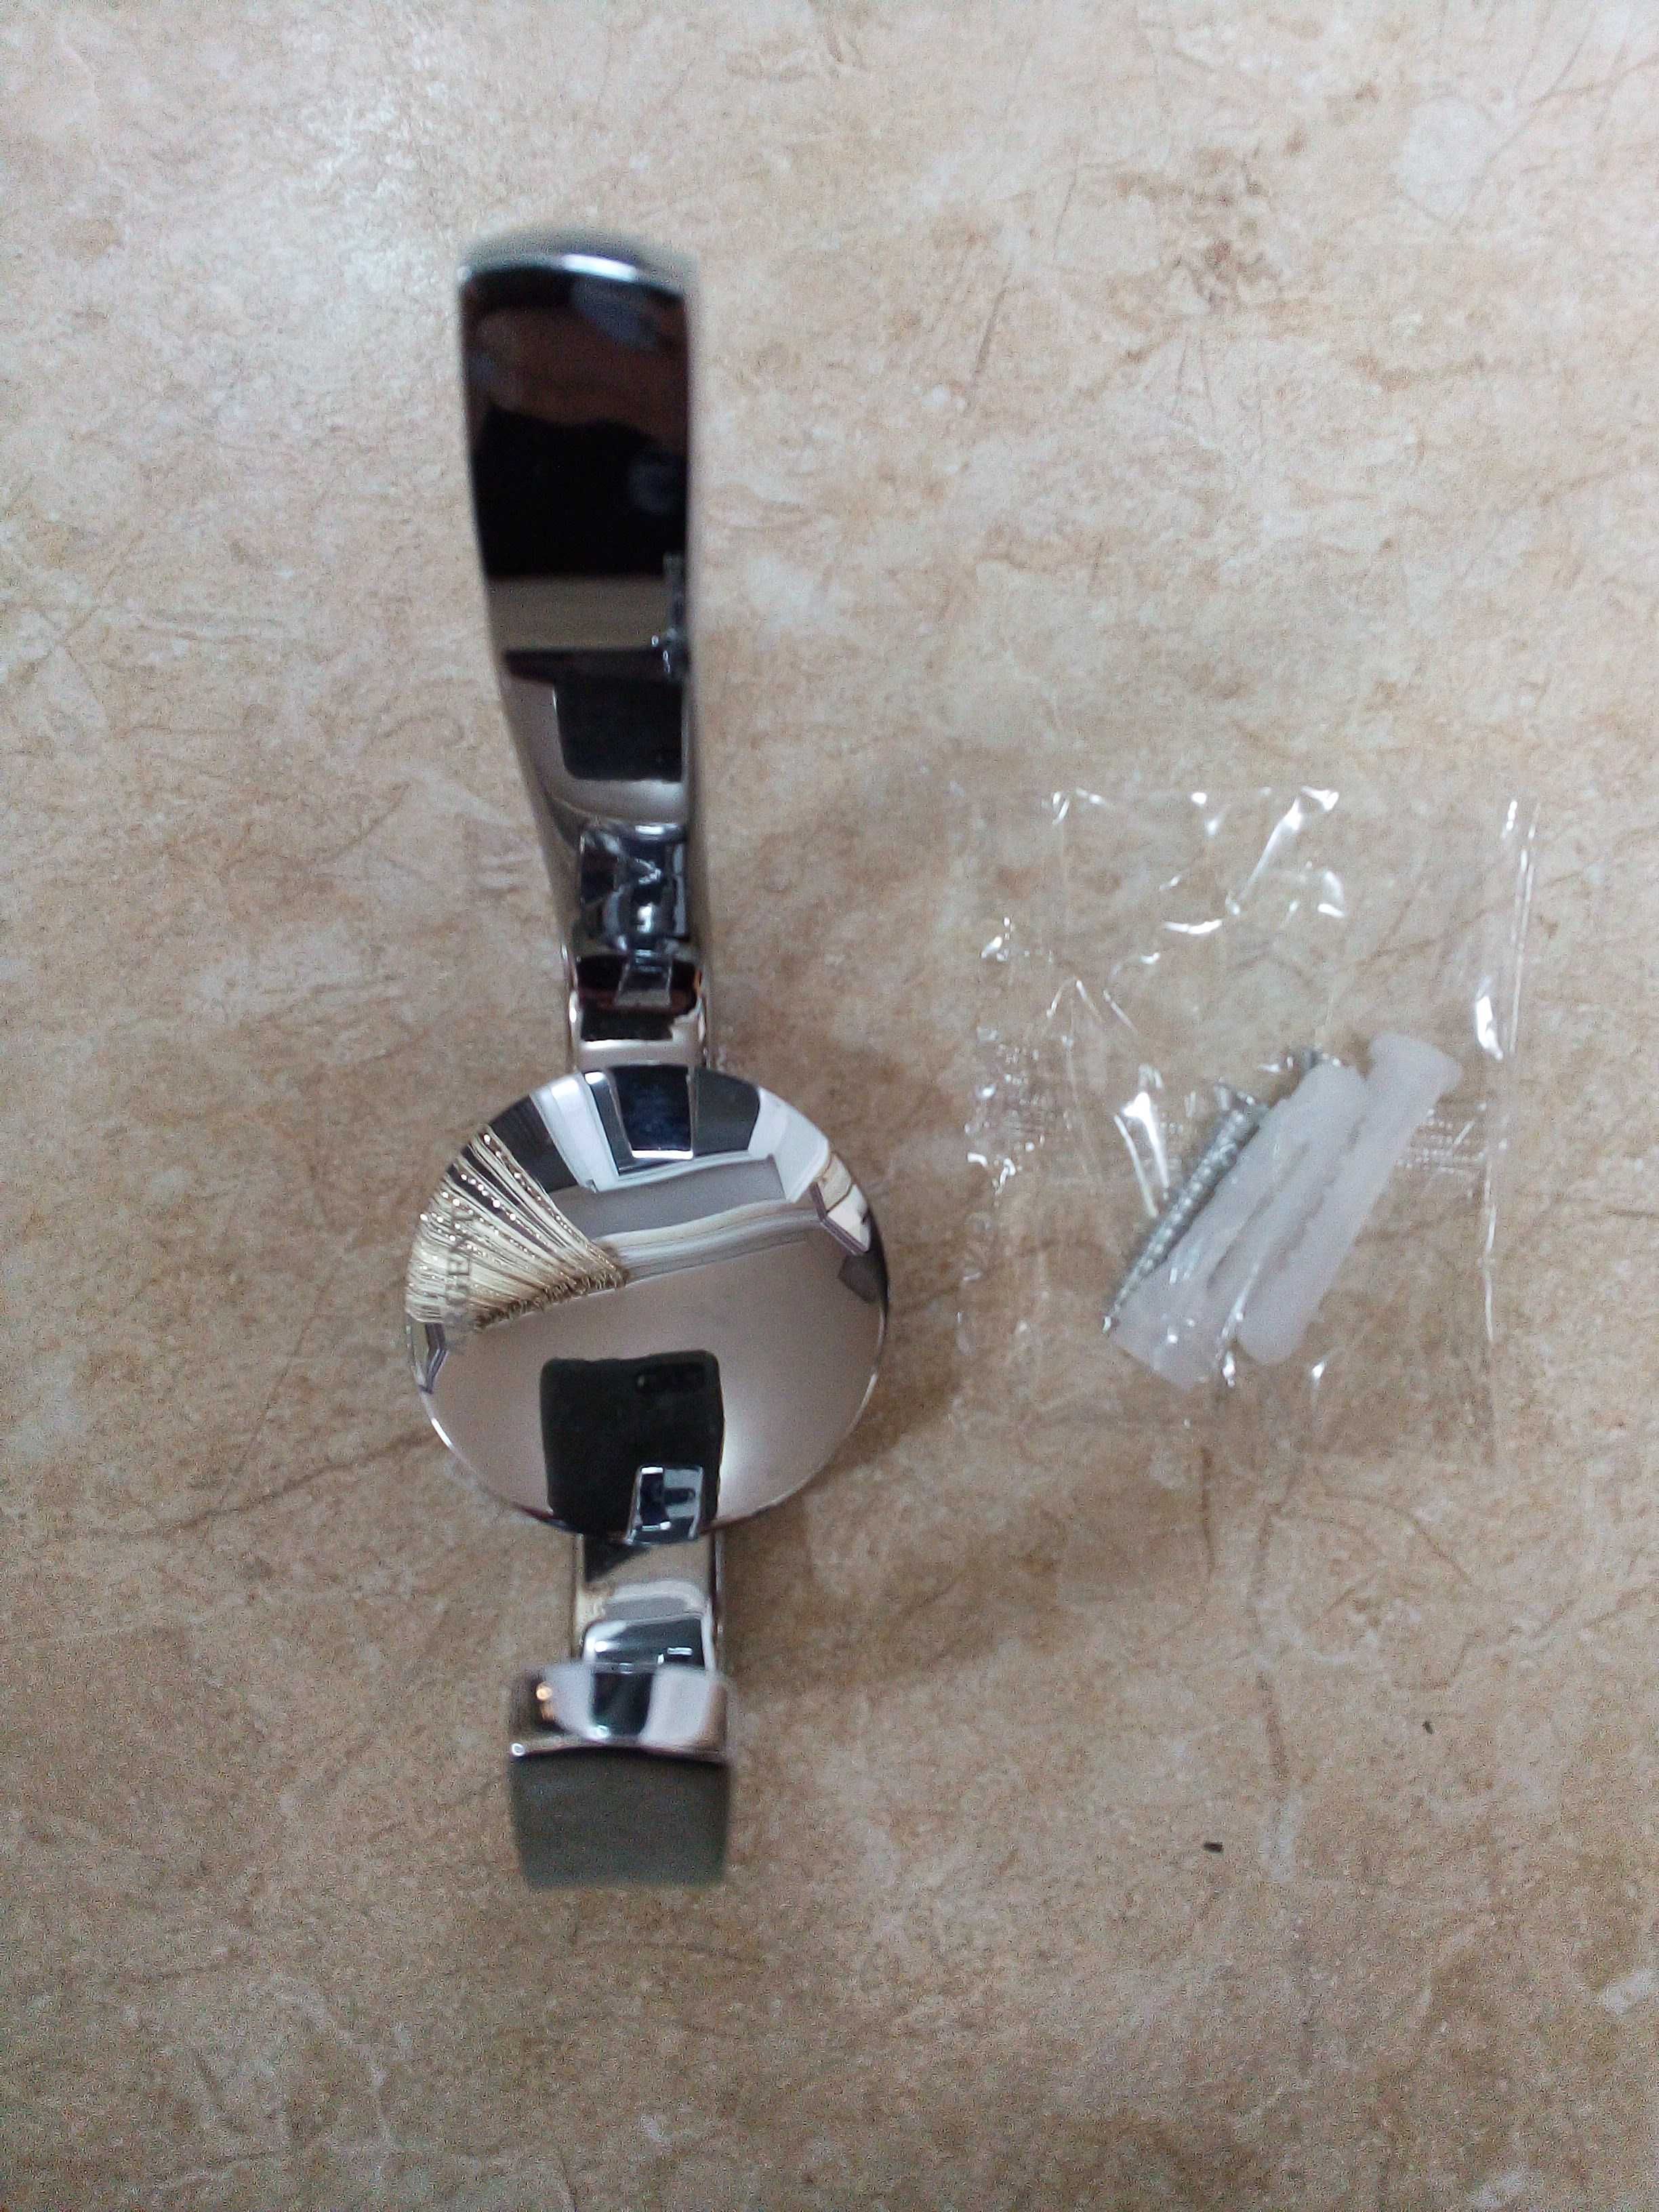 Массивная никелированная вешалка Argent(см фото).Цена 45 тыс